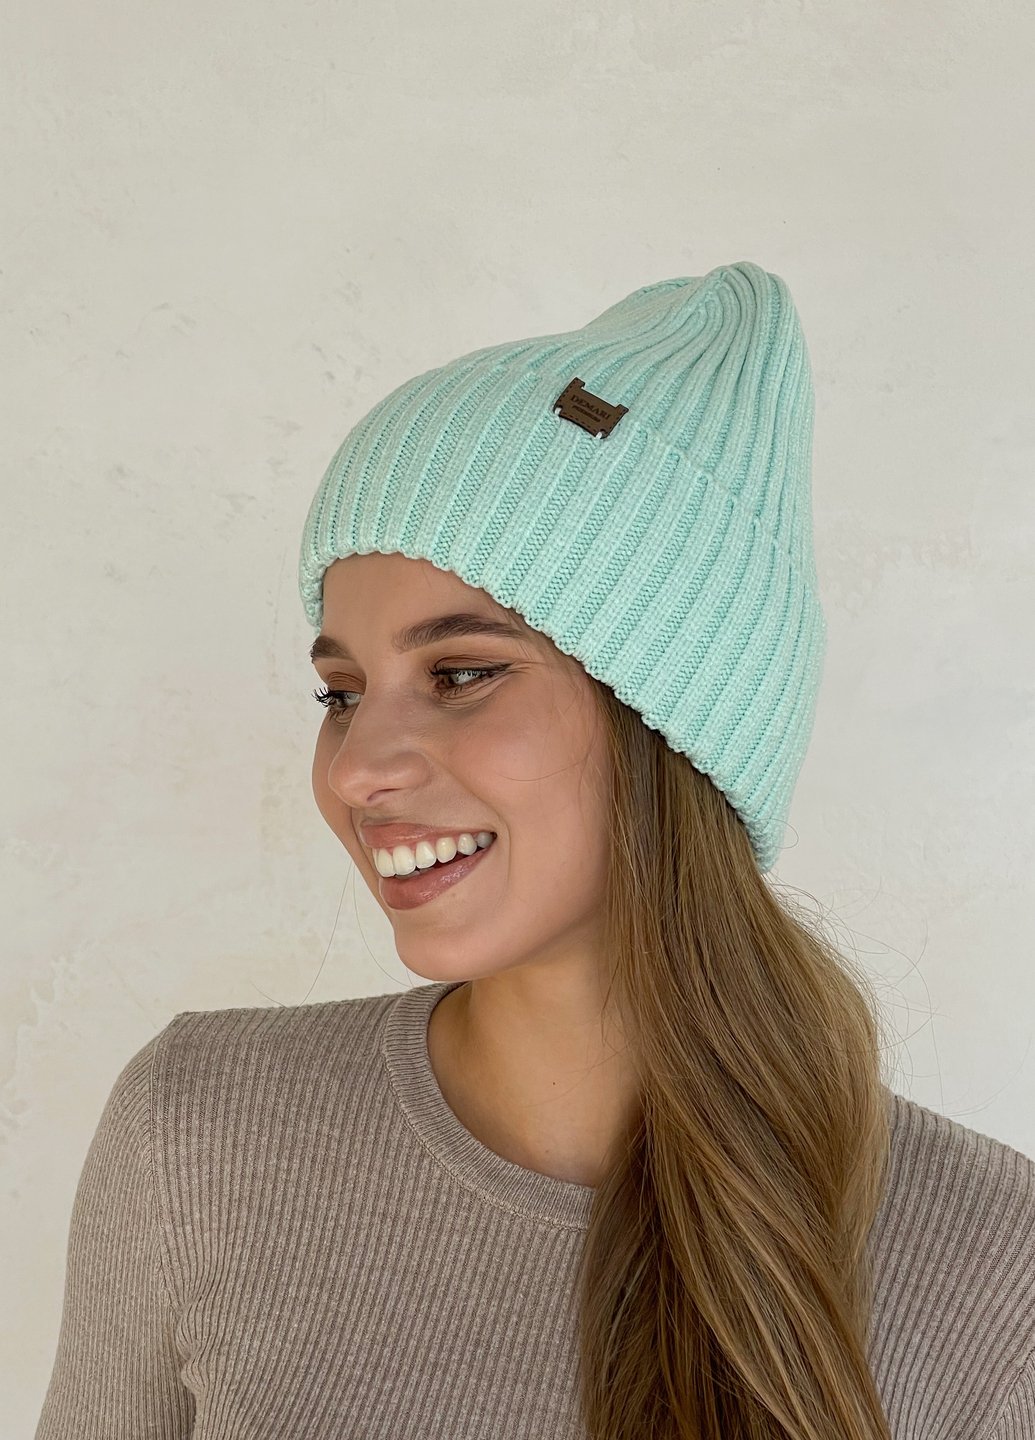 Купить Теплая зимняя кашемировая женская шапка с отворотом на флисовой подкладке DeMari 500125 в интернет-магазине